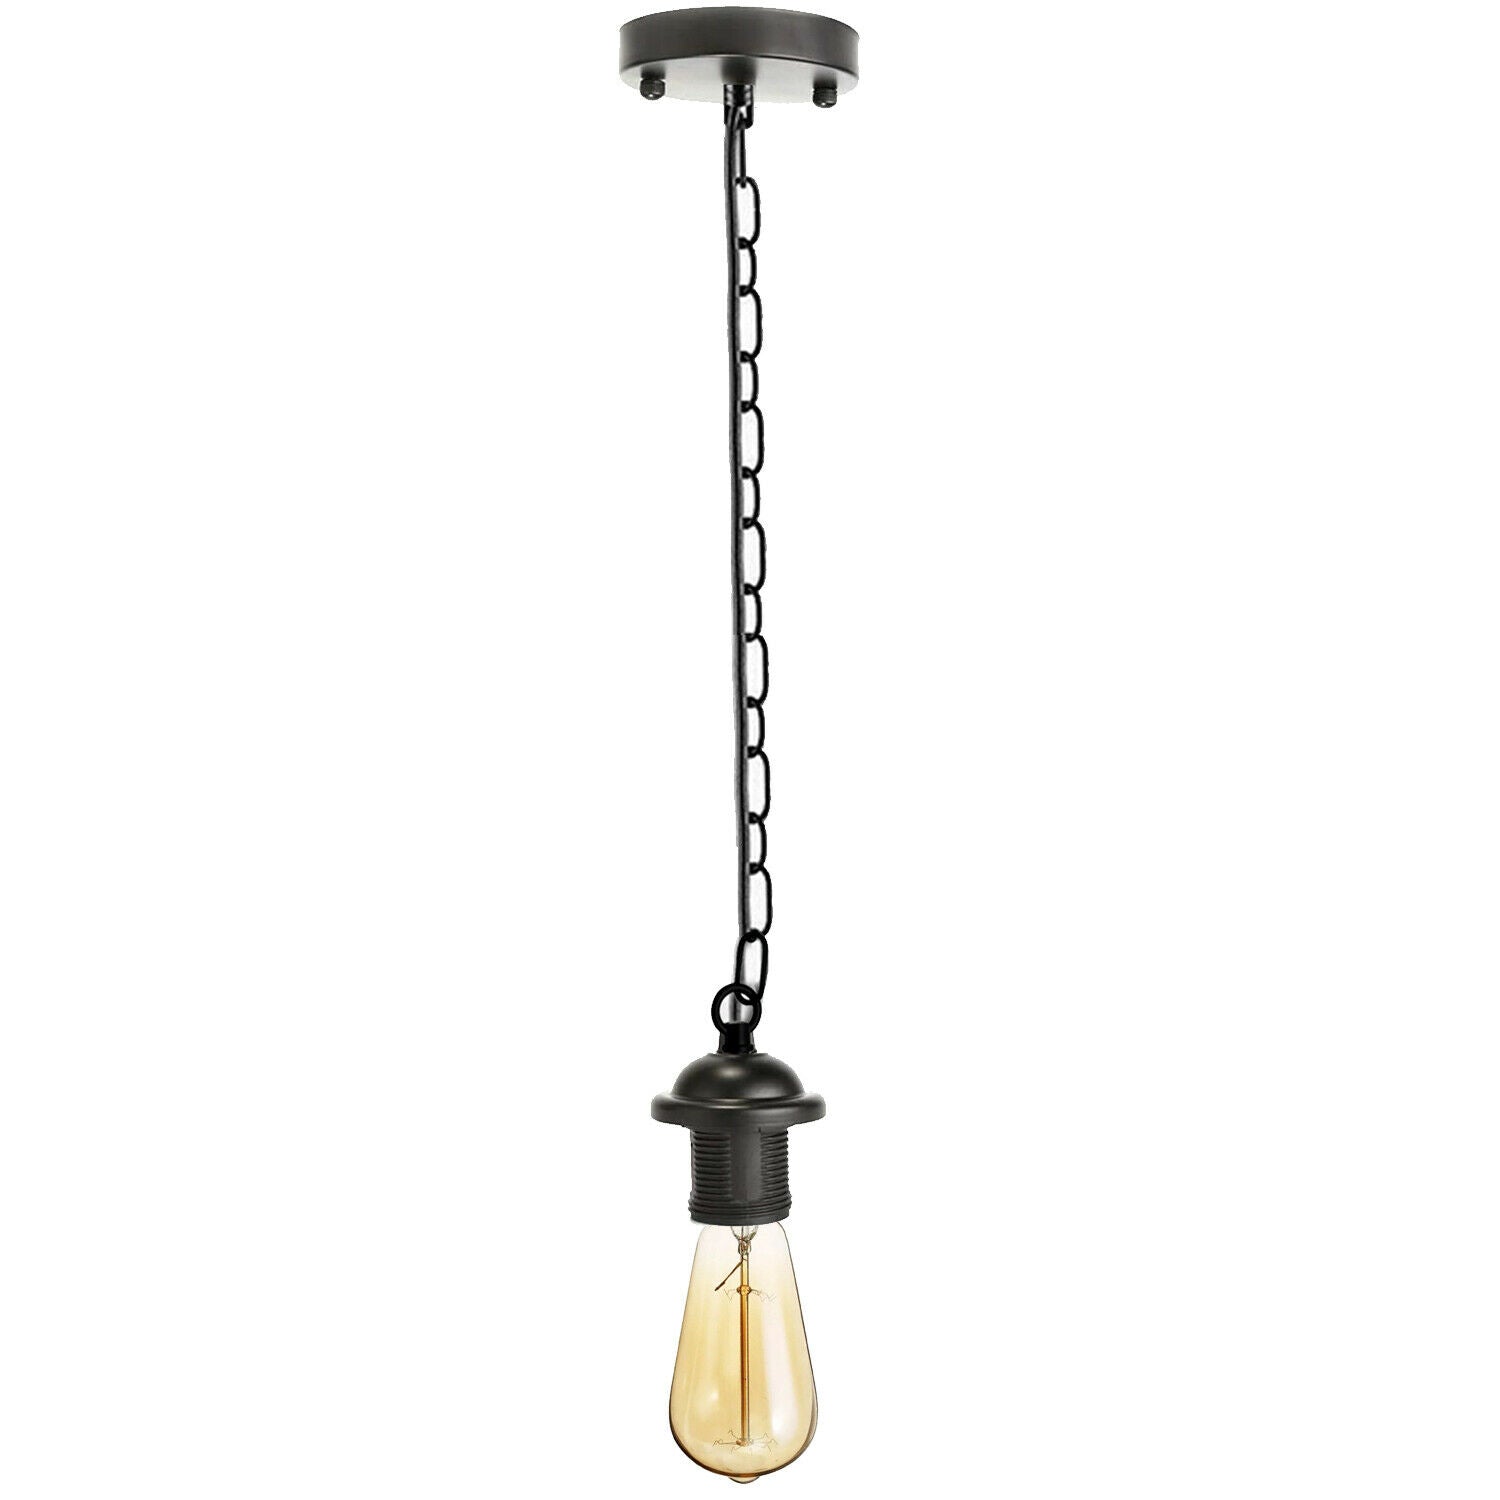 Black Metal Ceiing E27 Lamp Holder Pendant Light With Chain~1778 - LEDSone UK Ltd